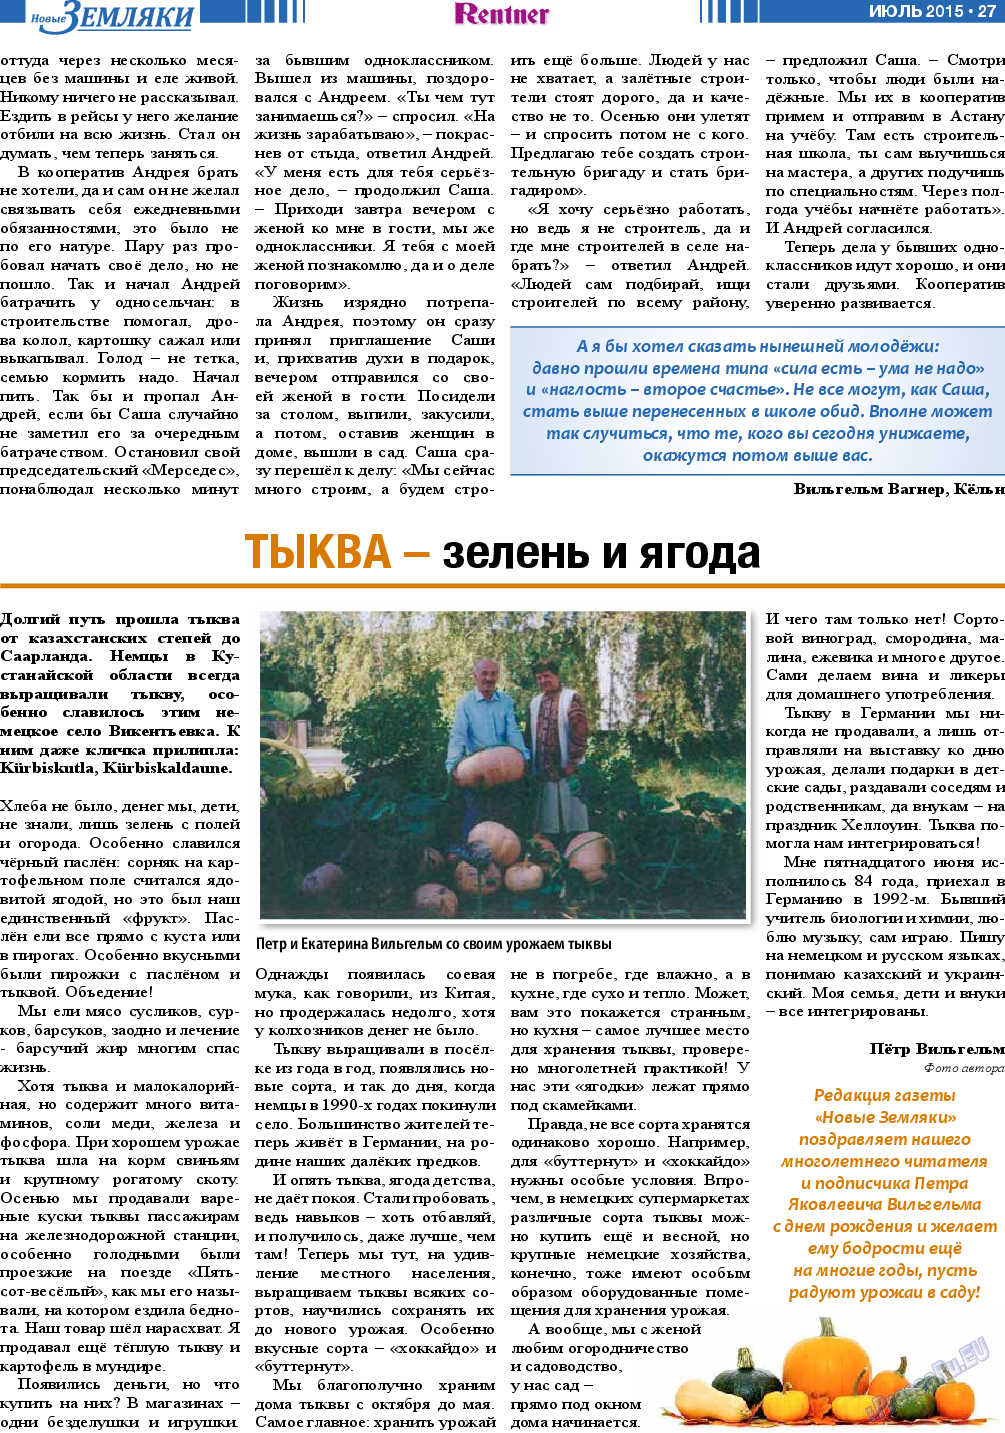 Новые Земляки, газета. 2015 №7 стр.27